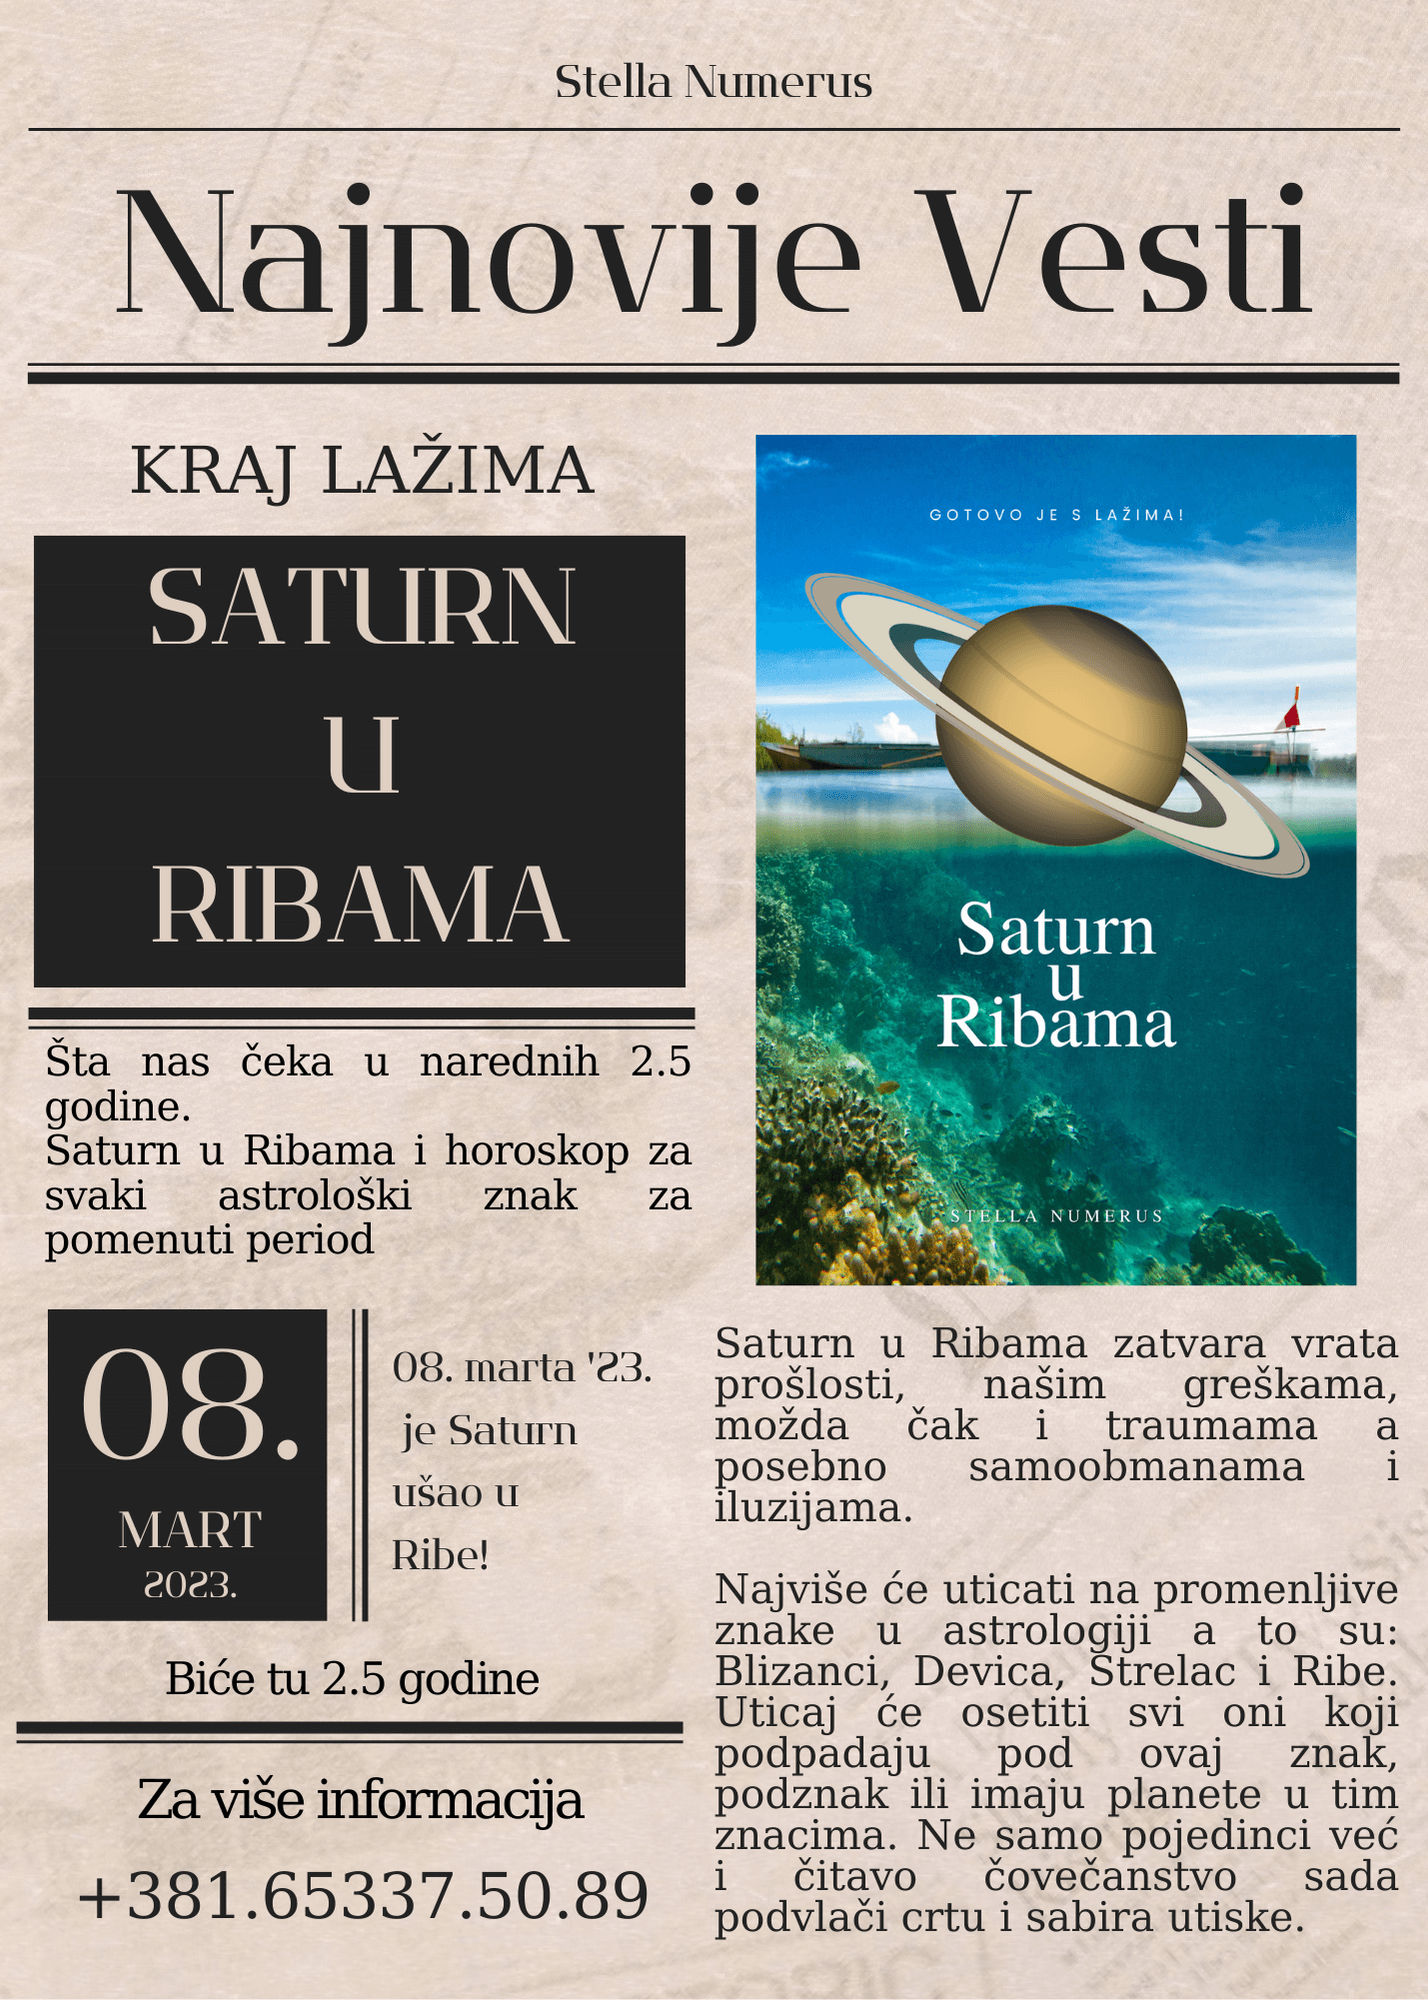 Šta nas čeka narednih 2.5 godina uz Saturn u Ribama-Stella Numerus